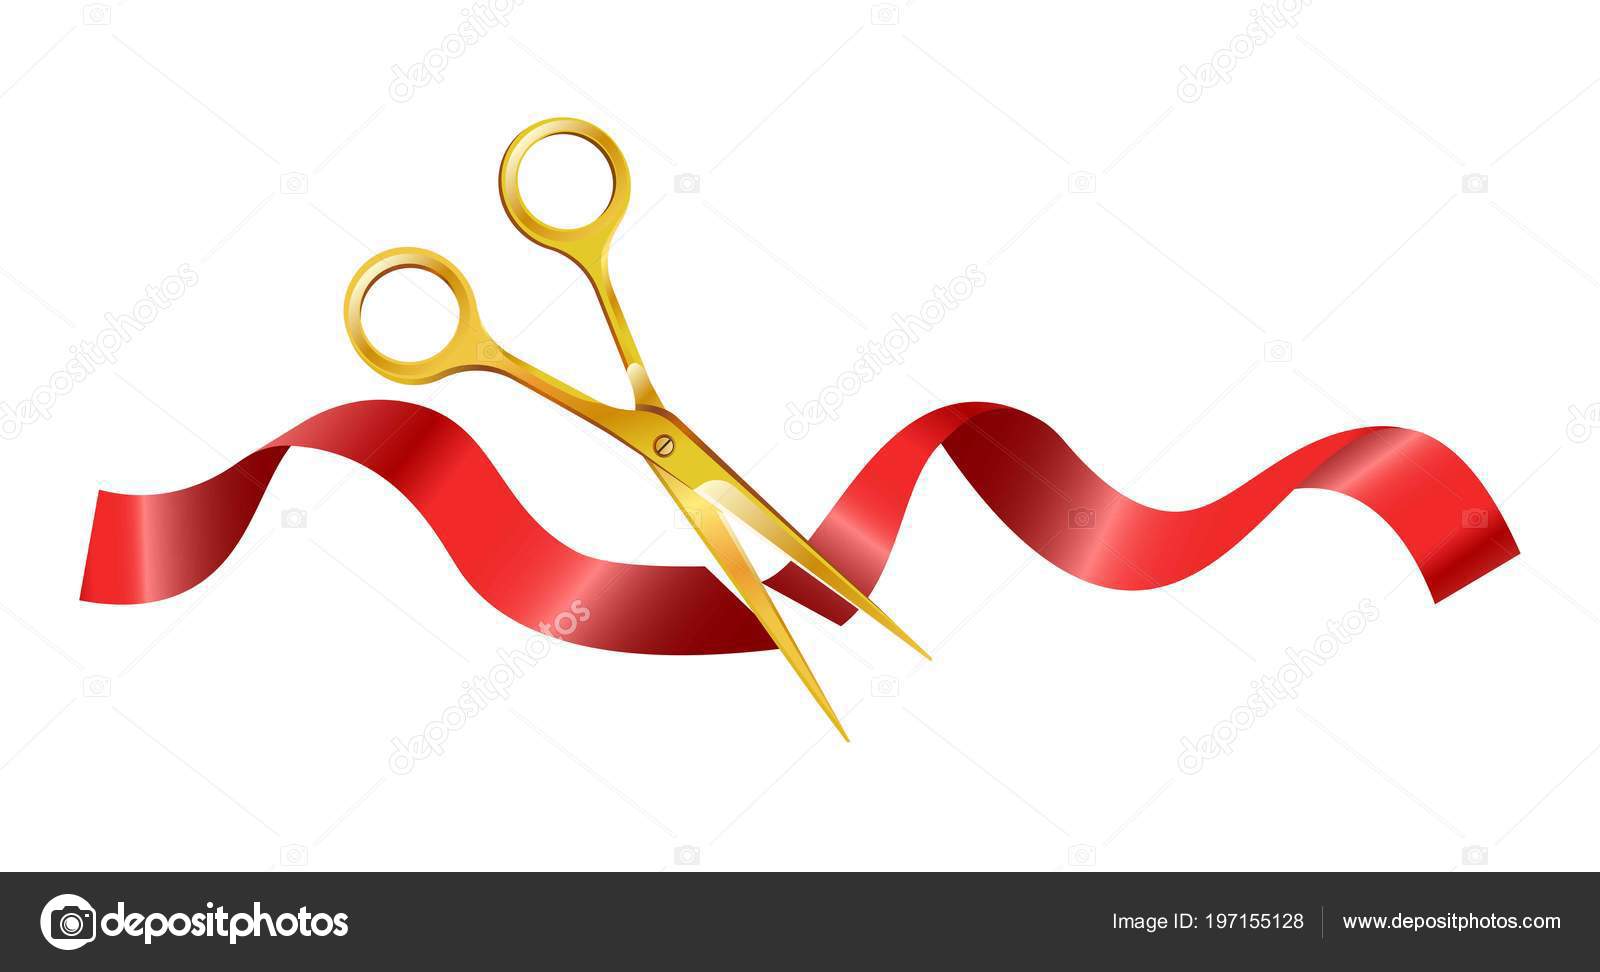 Scissors Ribbon Cutting